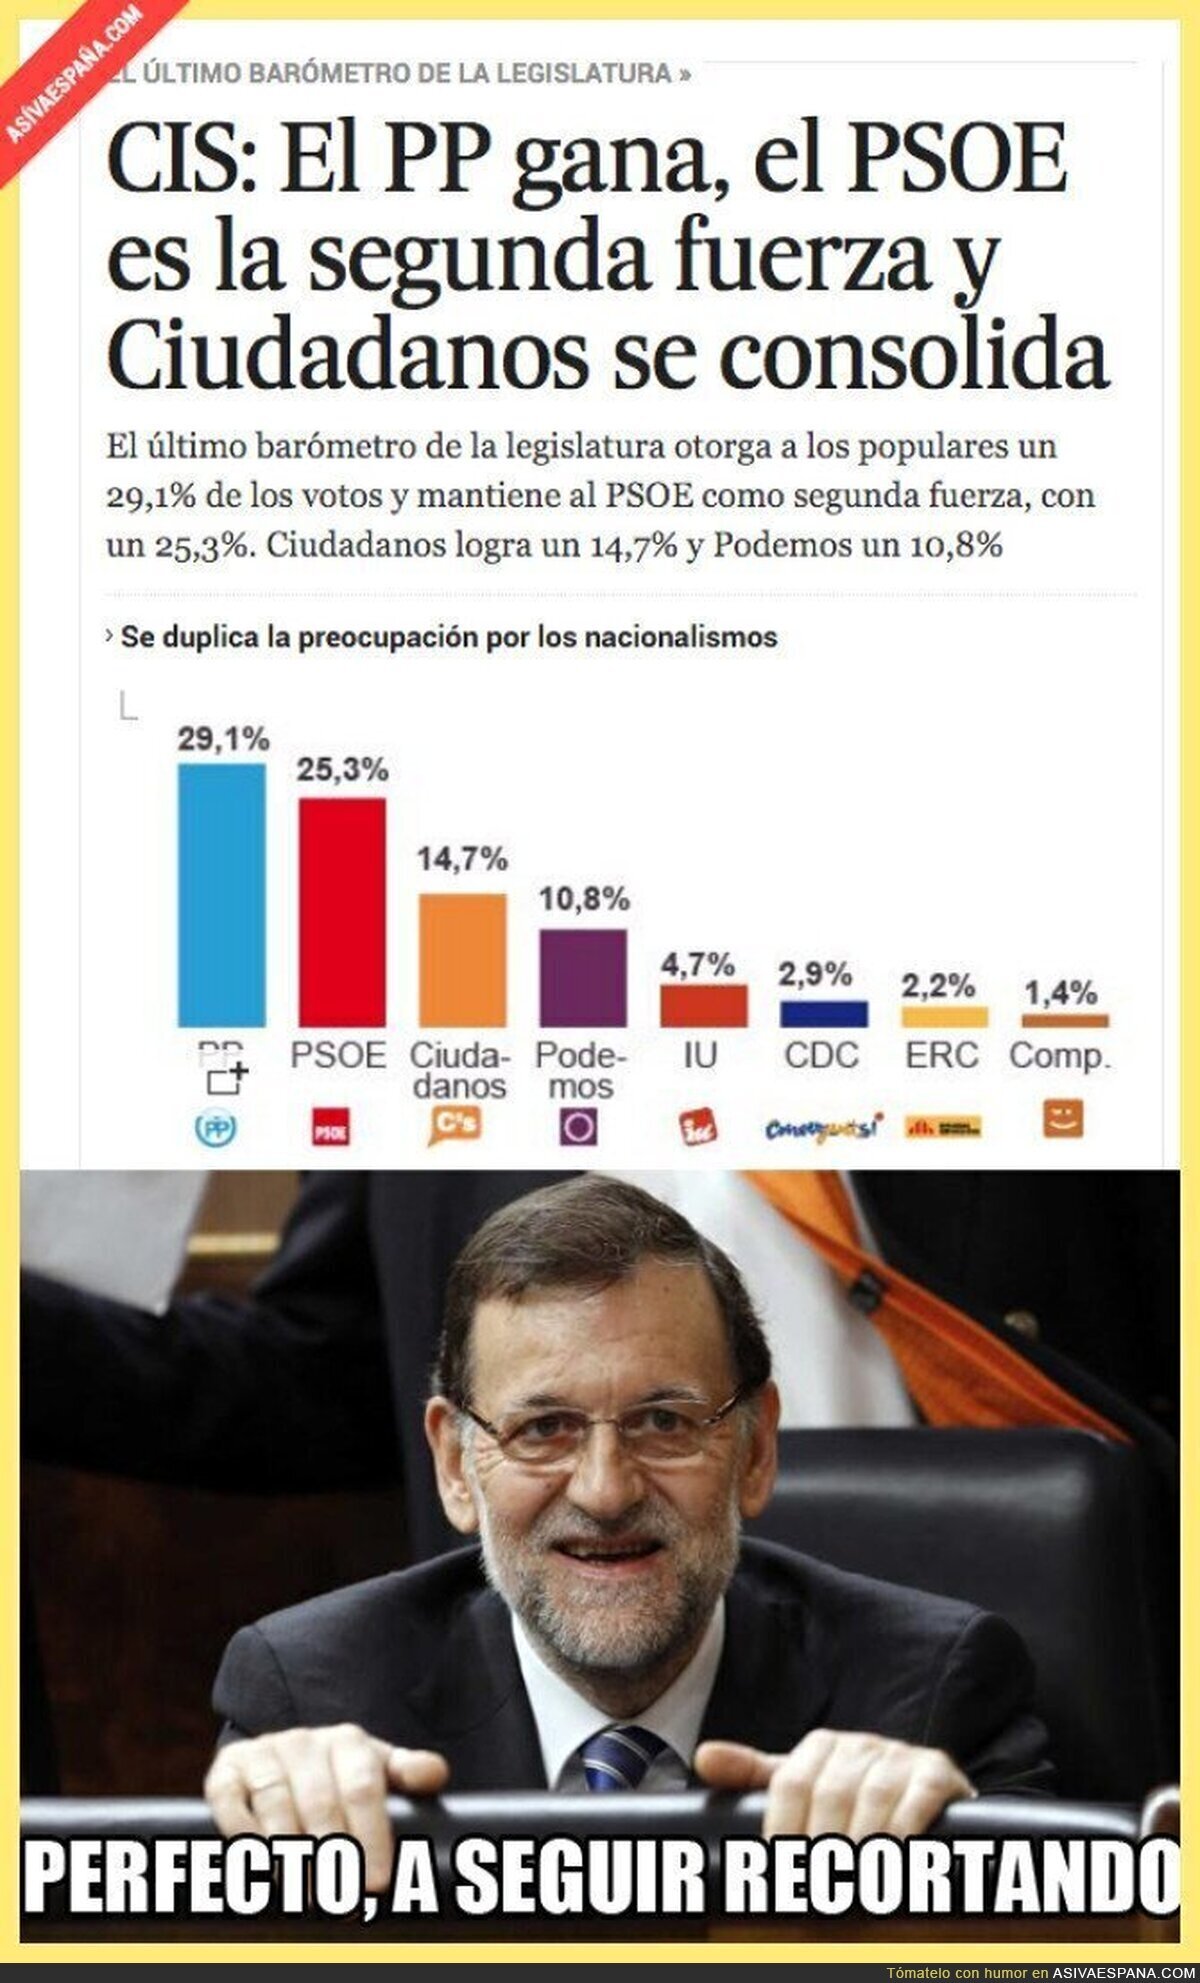 Rajoy sale reforzado en el CIS pese a todo